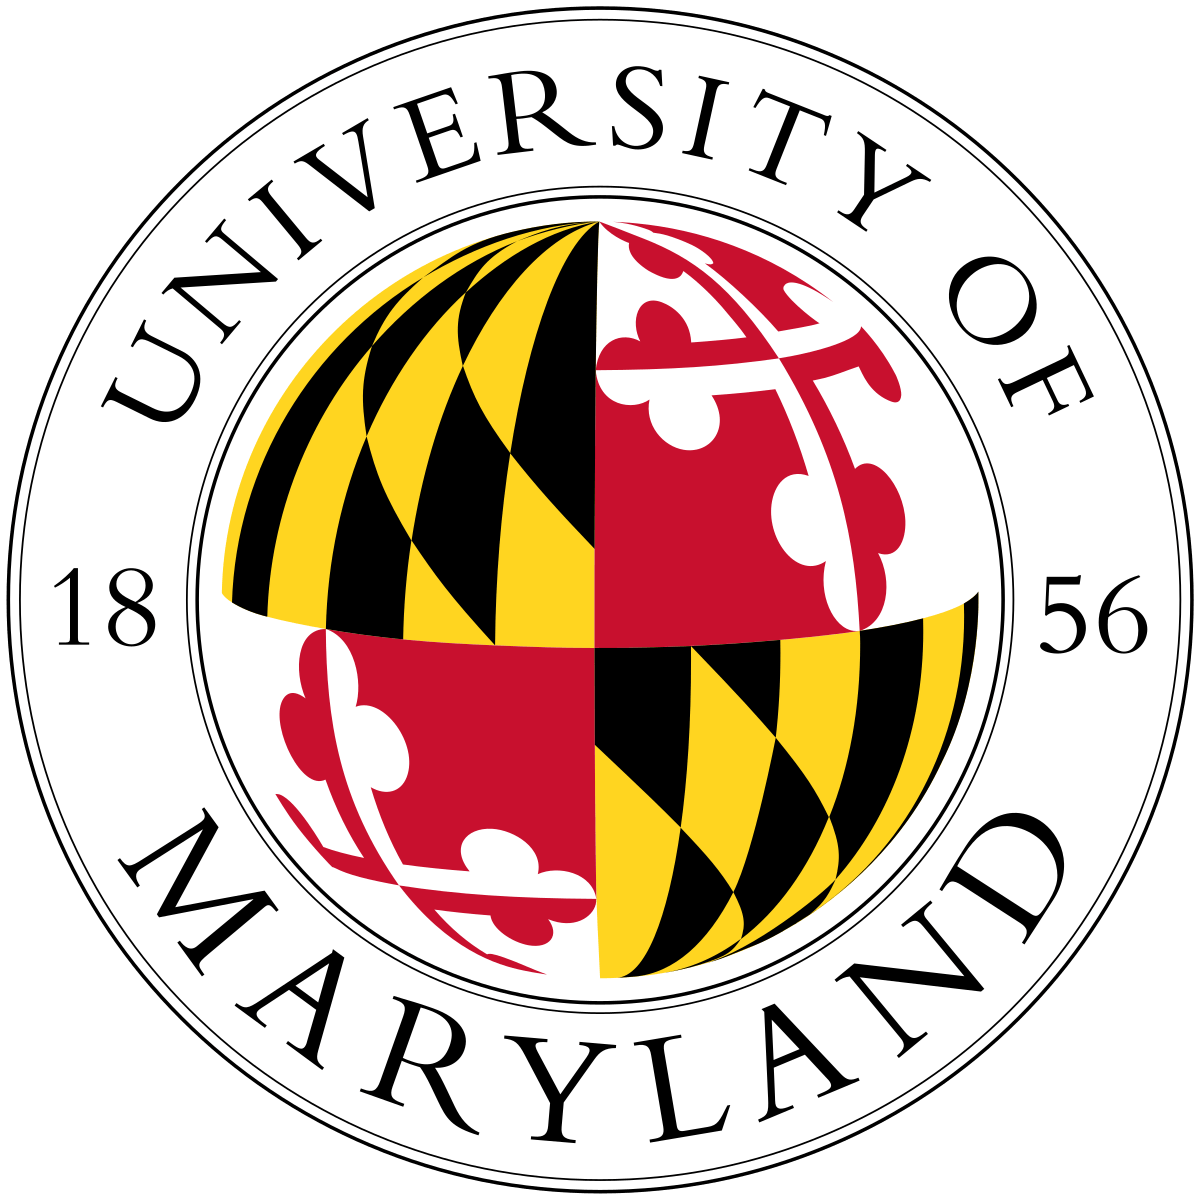 Maryland M Logo - University of Maryland, College Park